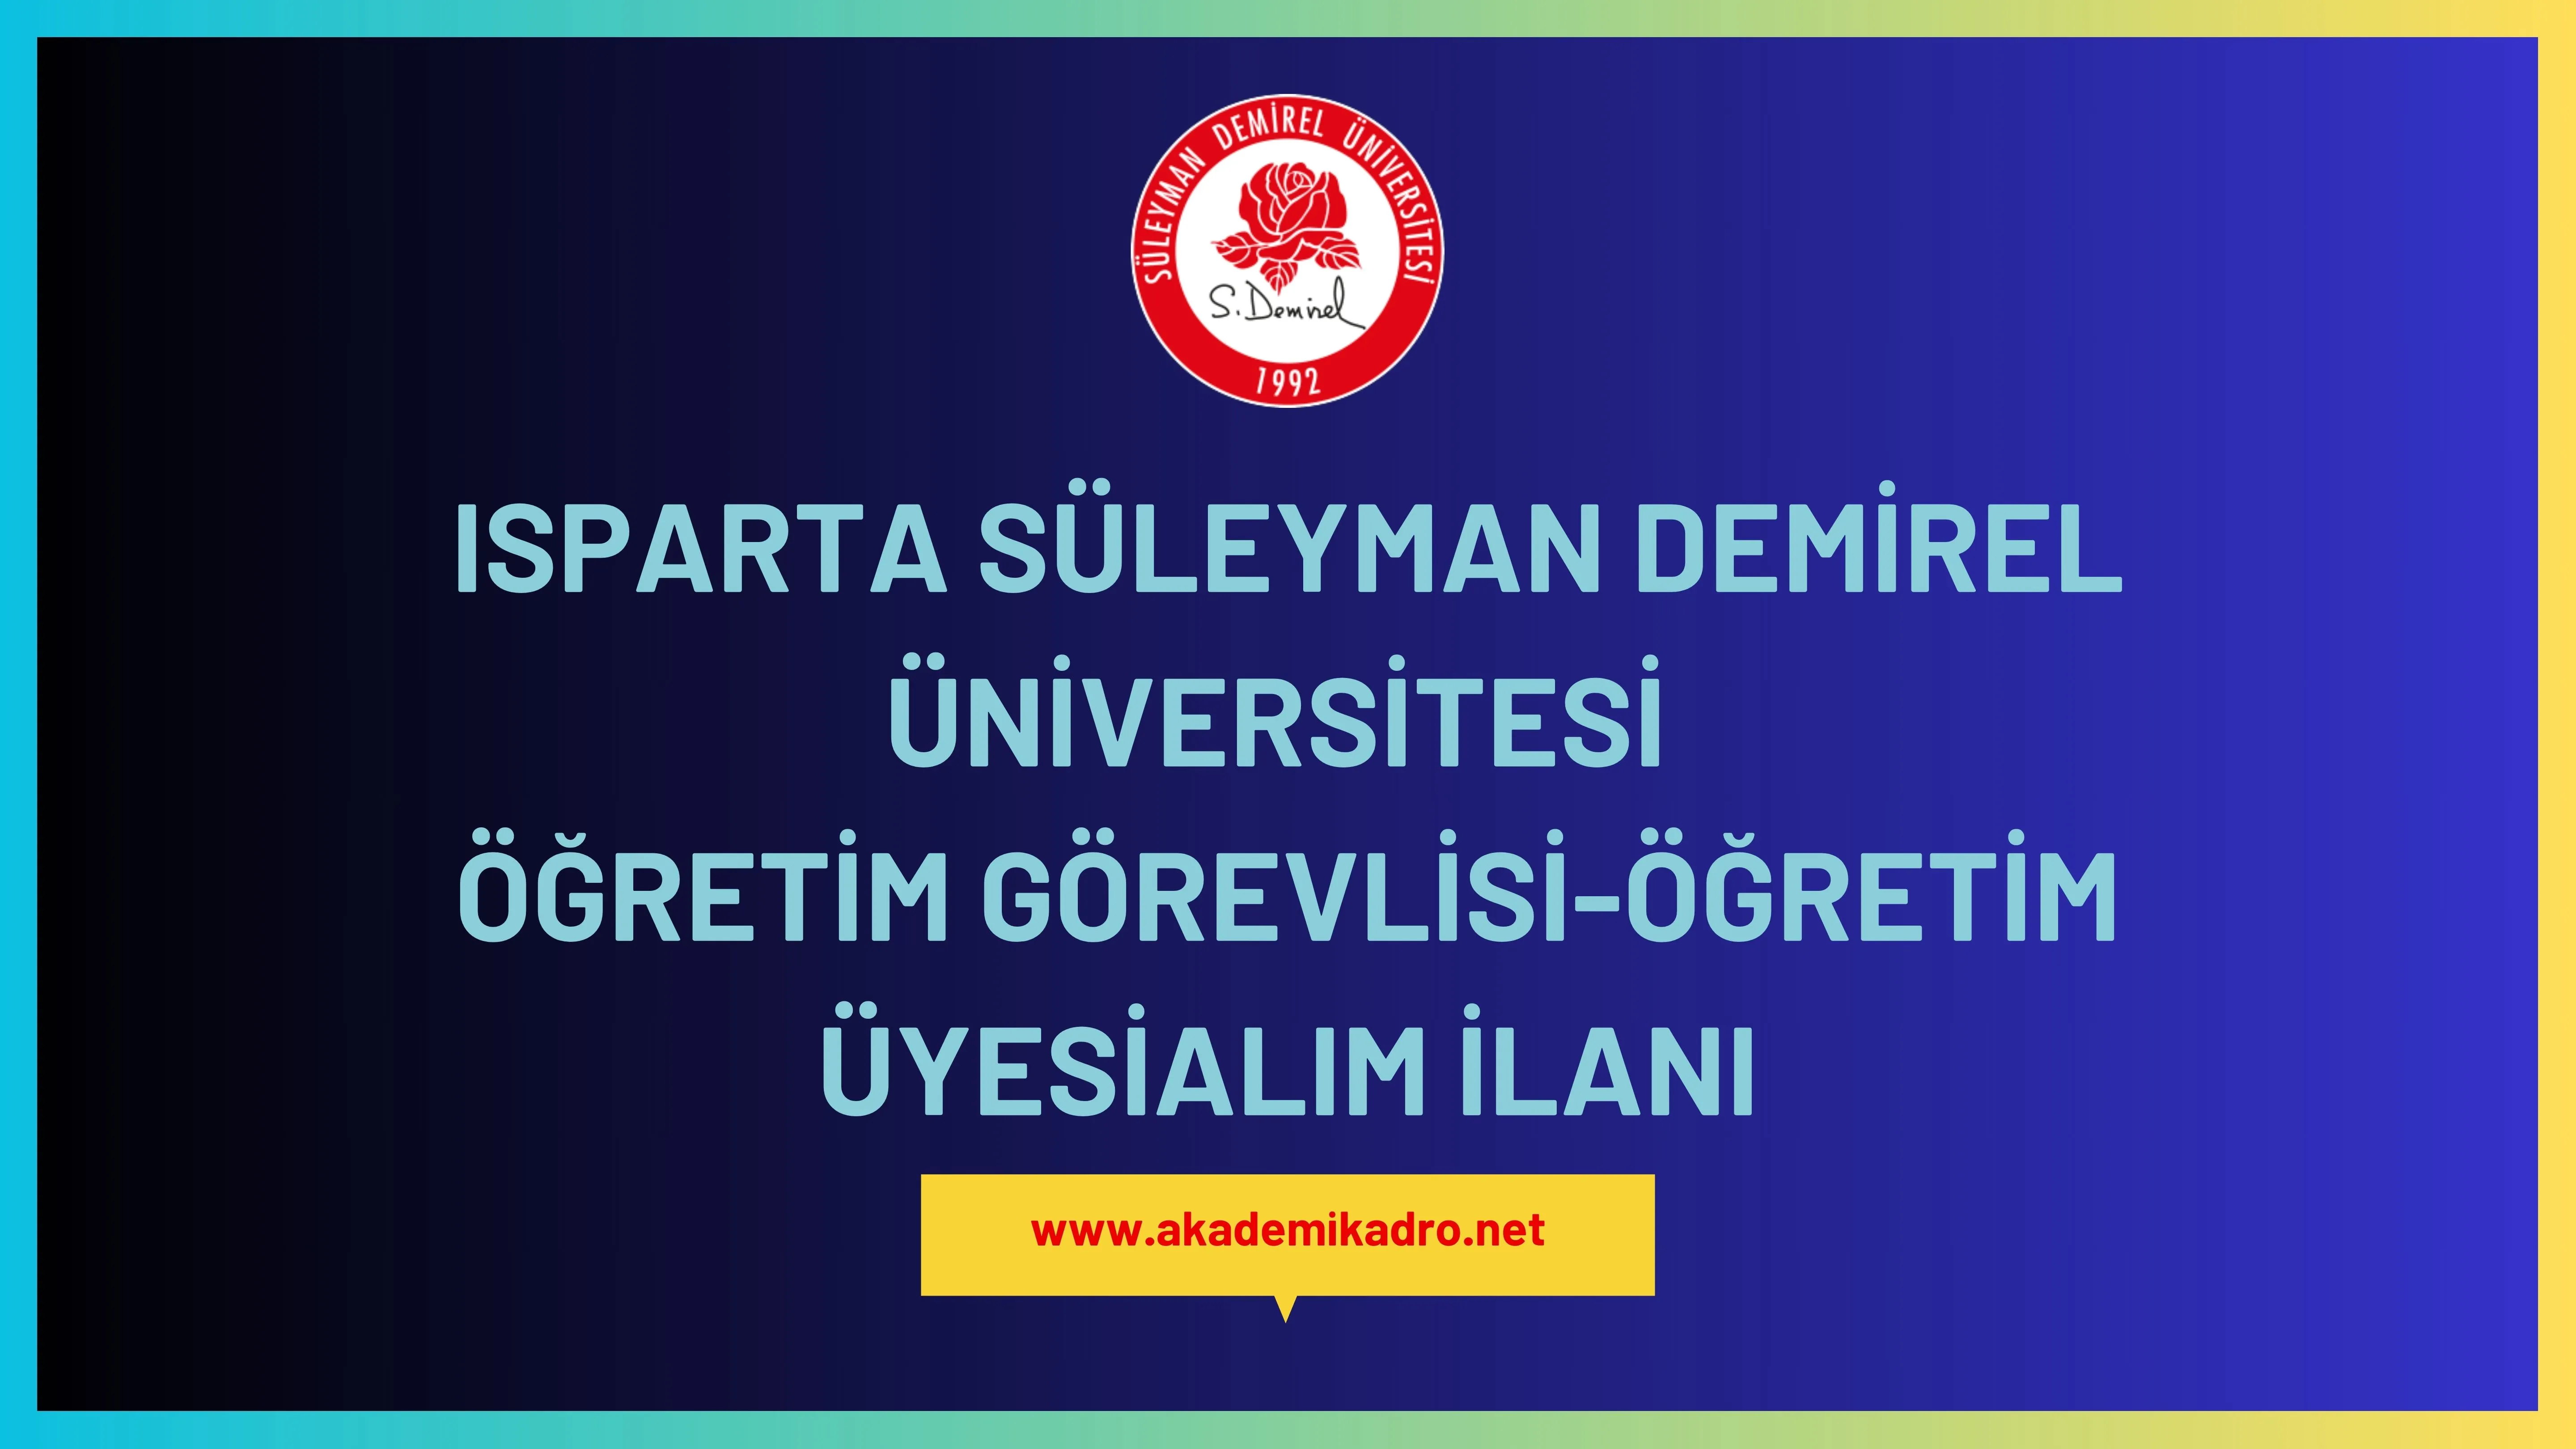 Süleyman Demirel Üniversitesi 13 Öğretim görevlisi ve öğretim üyesi alacak.